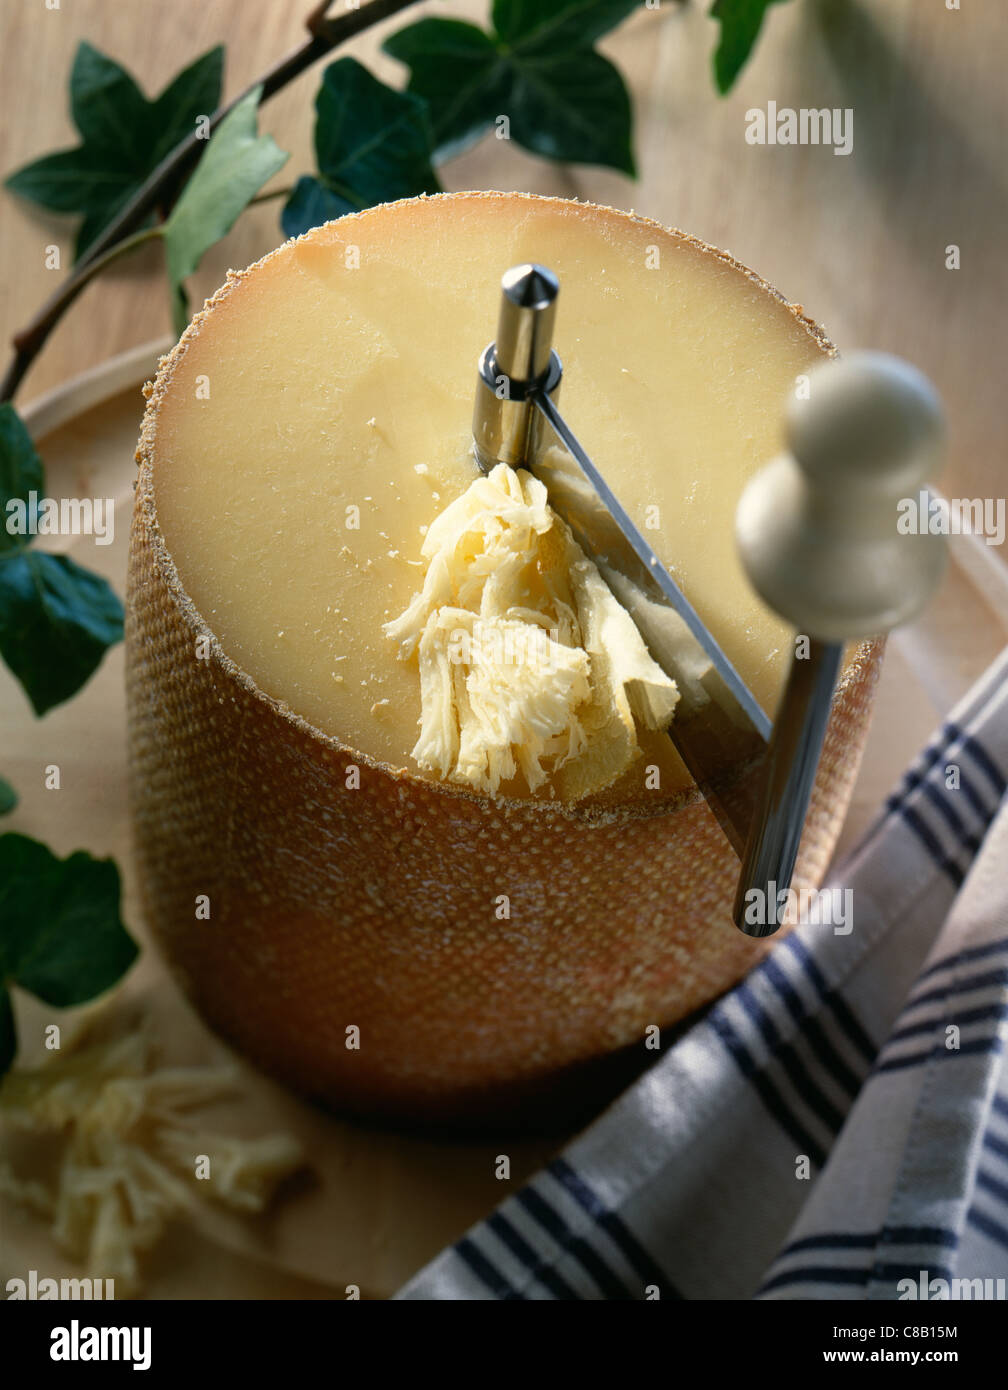 https://c8.alamy.com/comp/C8B15M/cheese-and-girolle-cheese-shaver-C8B15M.jpg